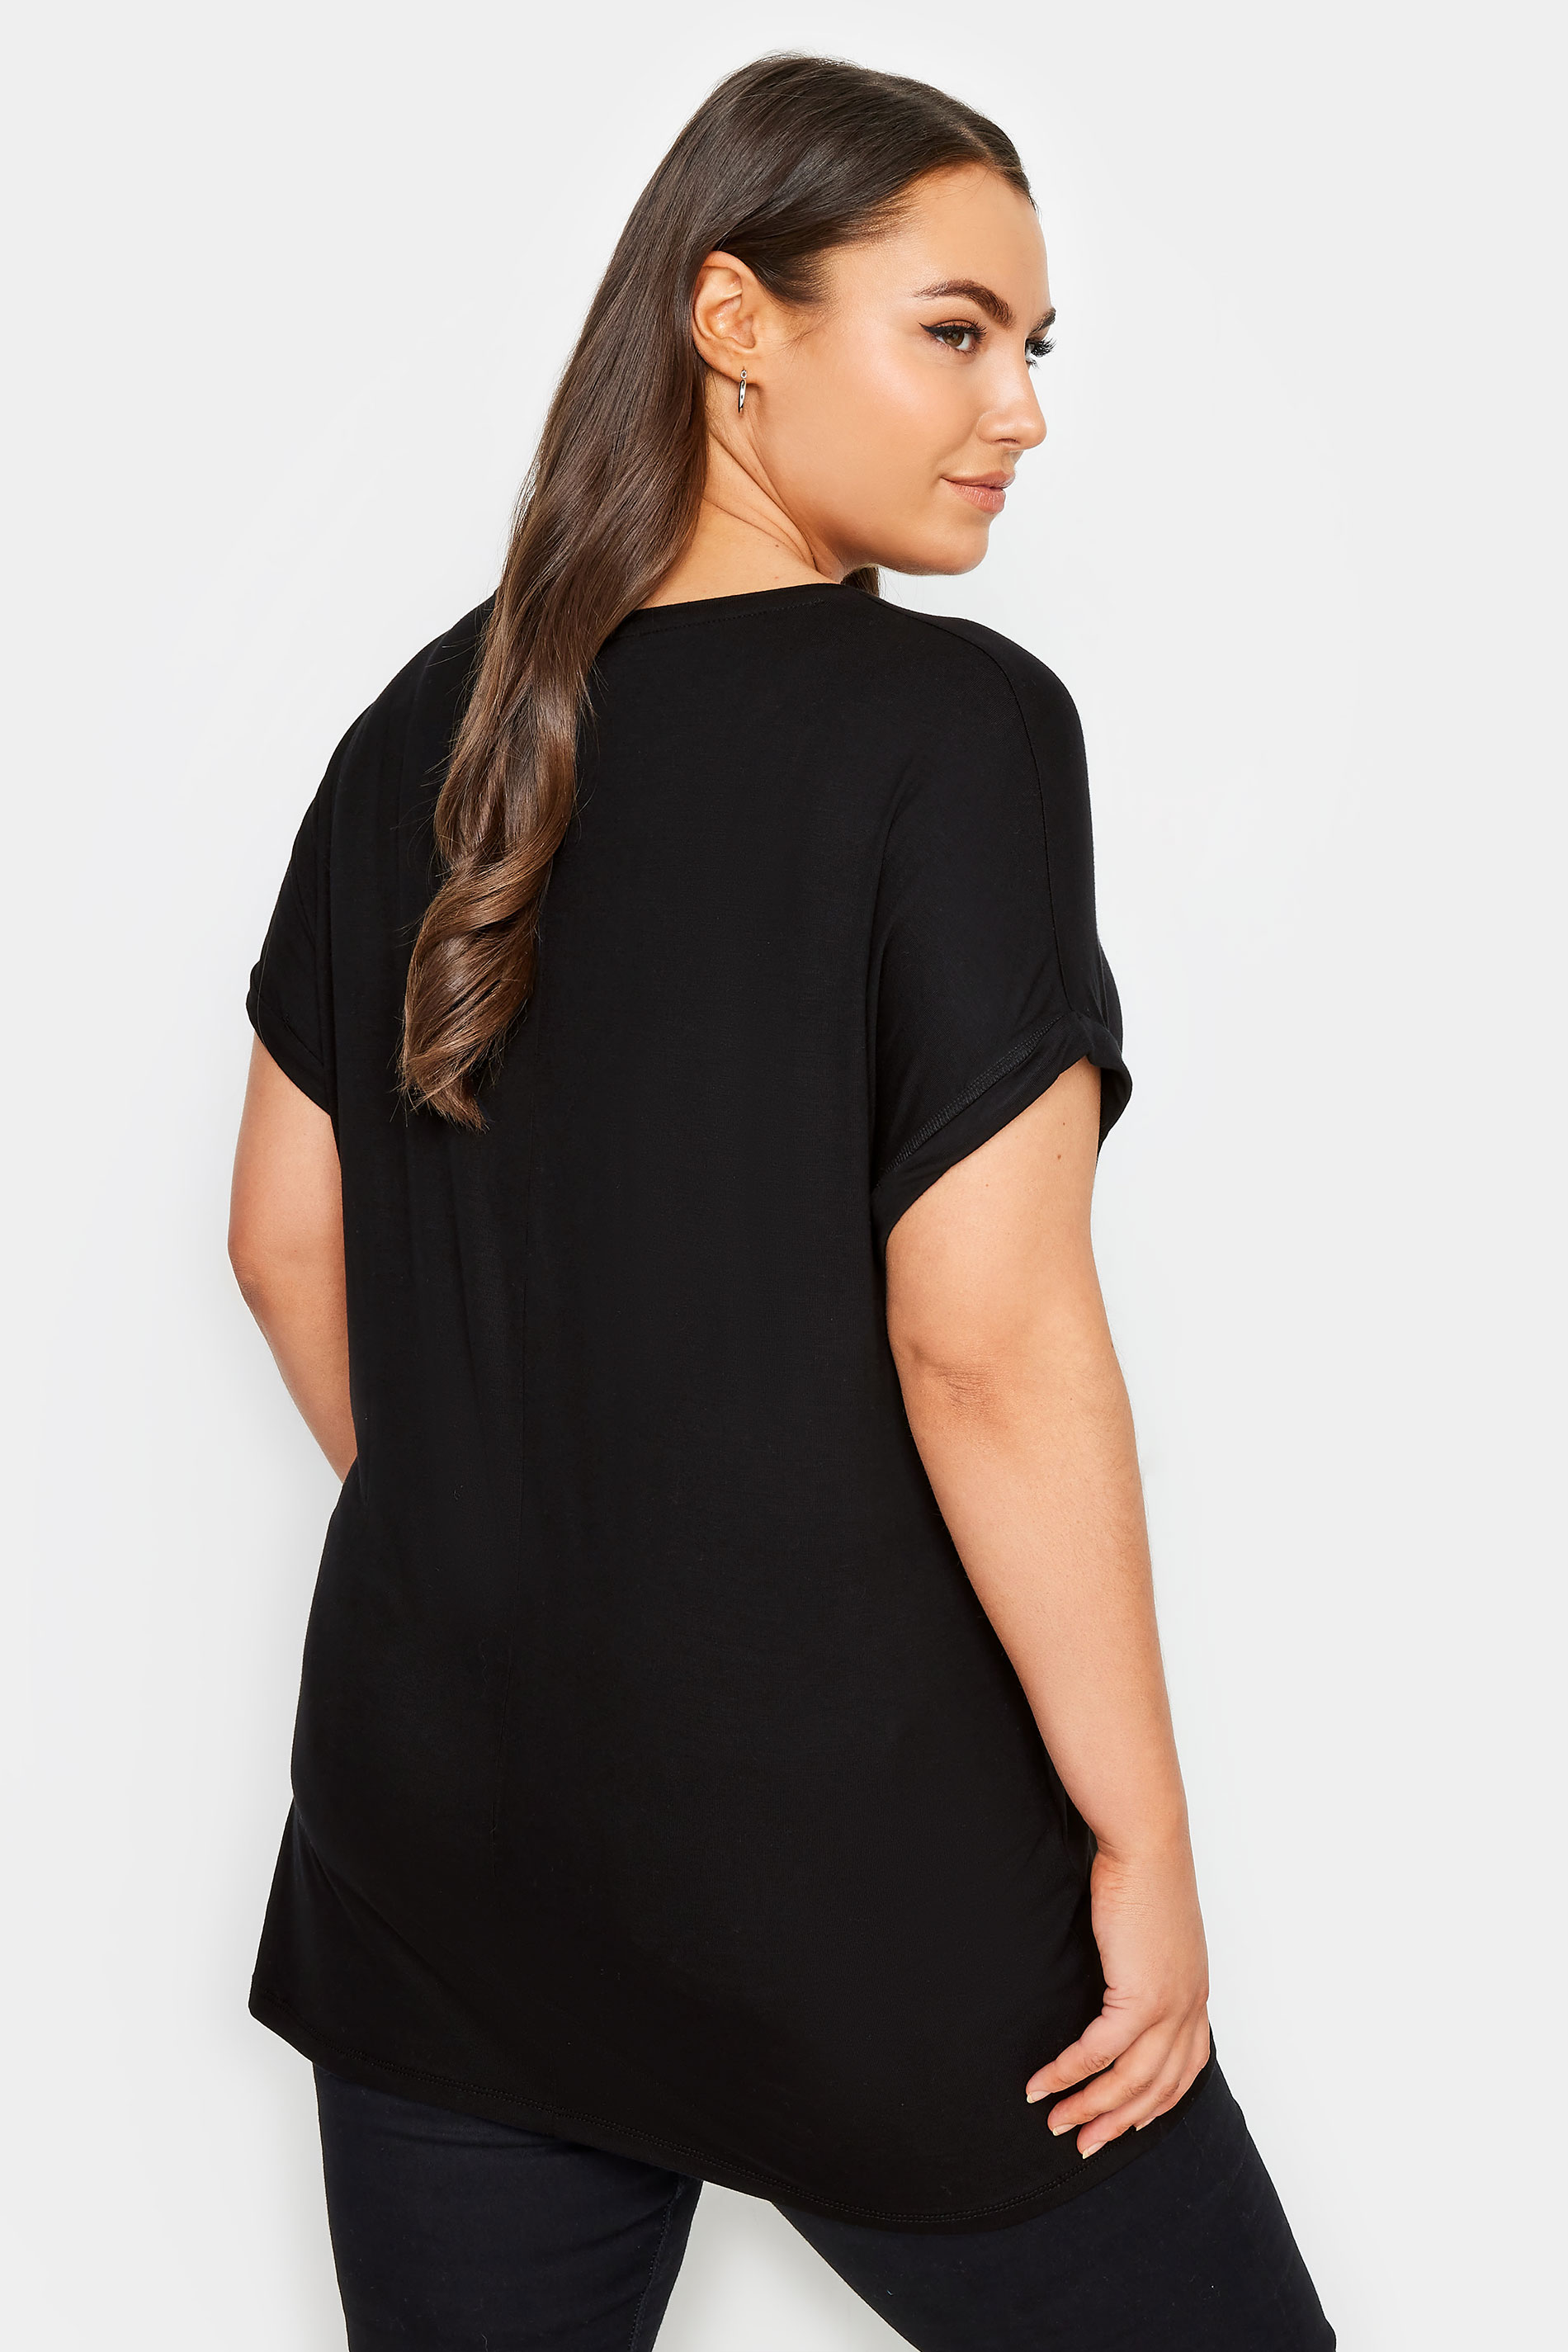 YOURS Plus Size Black Unicorn Design Glitter Embellished T-Shirt | Yours Clothing 3